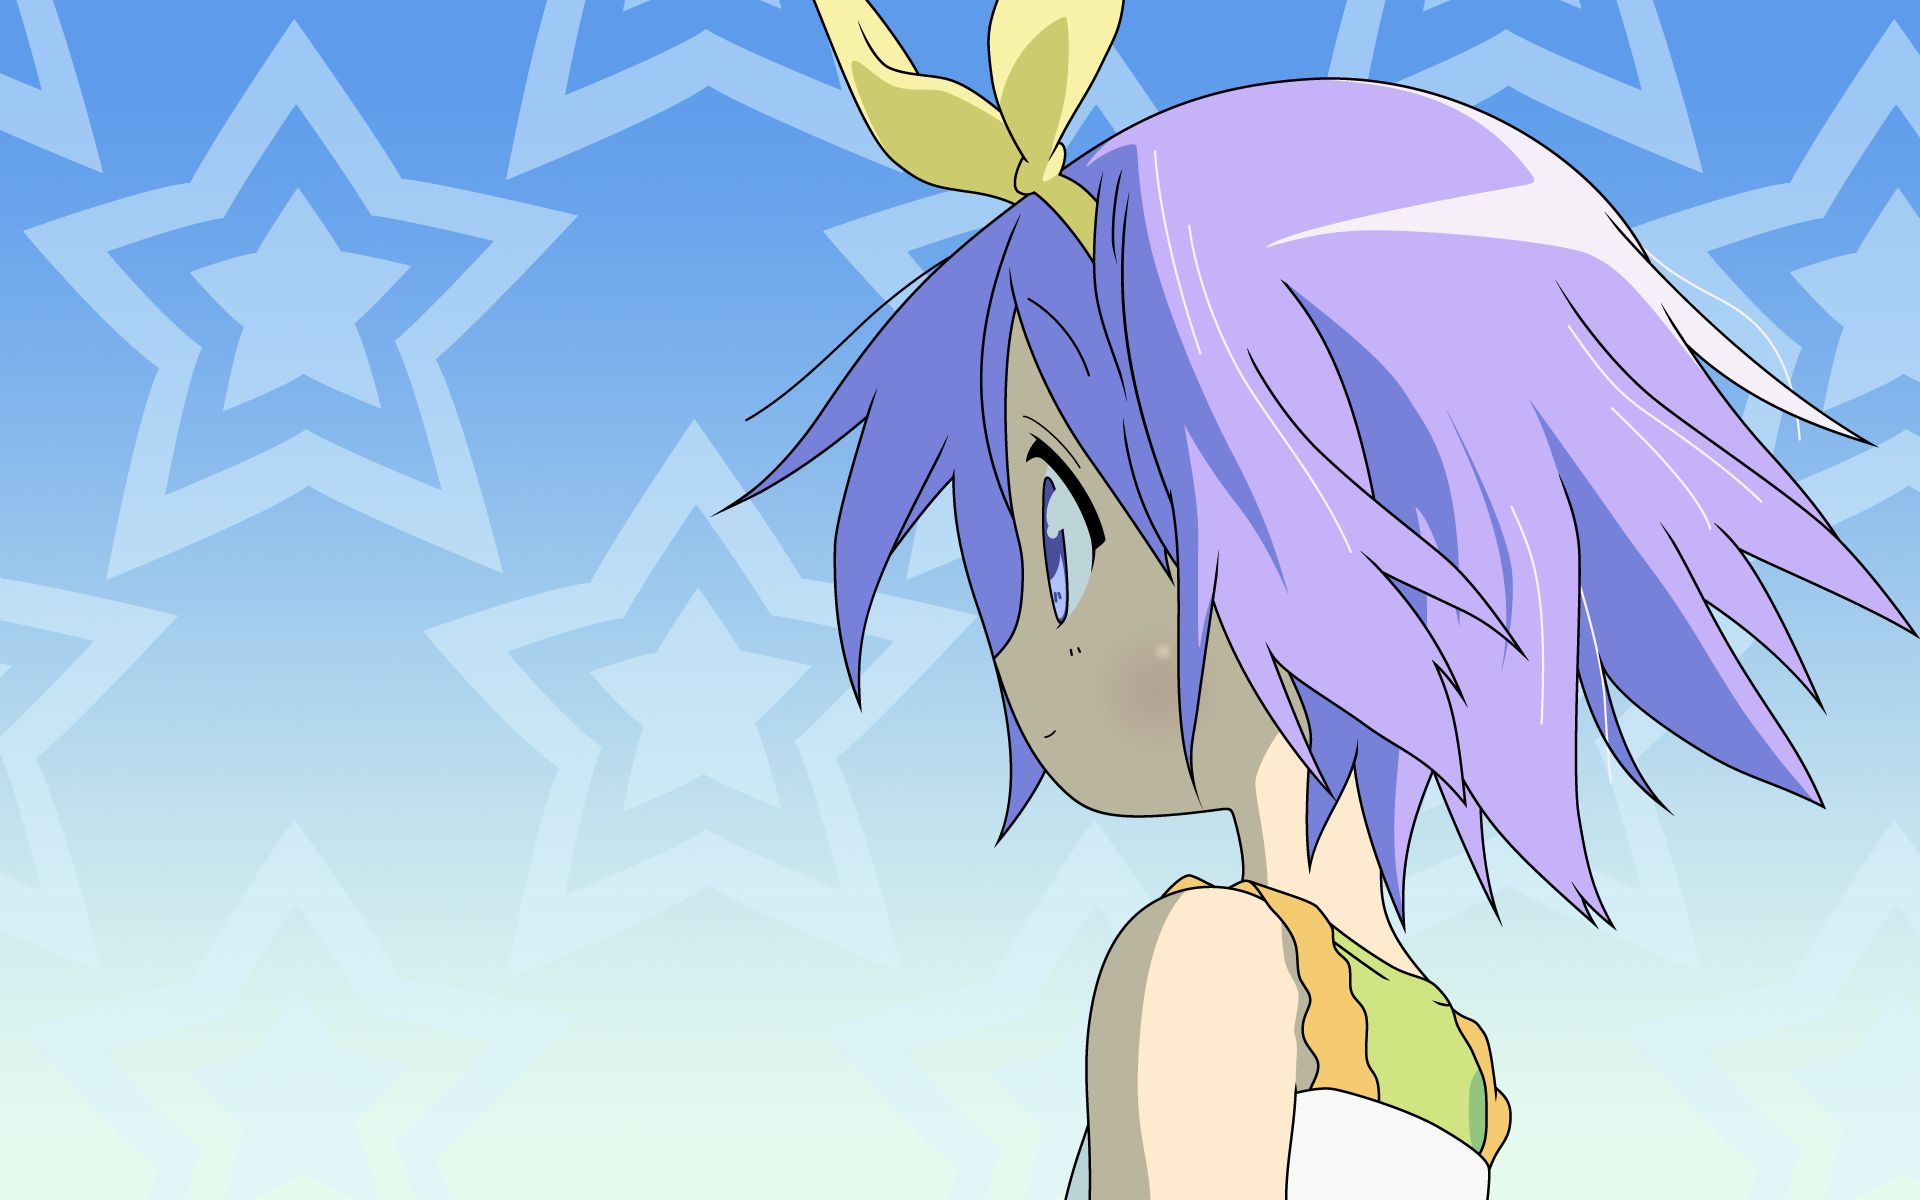 Download mobile wallpaper Anime, Lucky Star, Tsukasa Hiiragi for free.